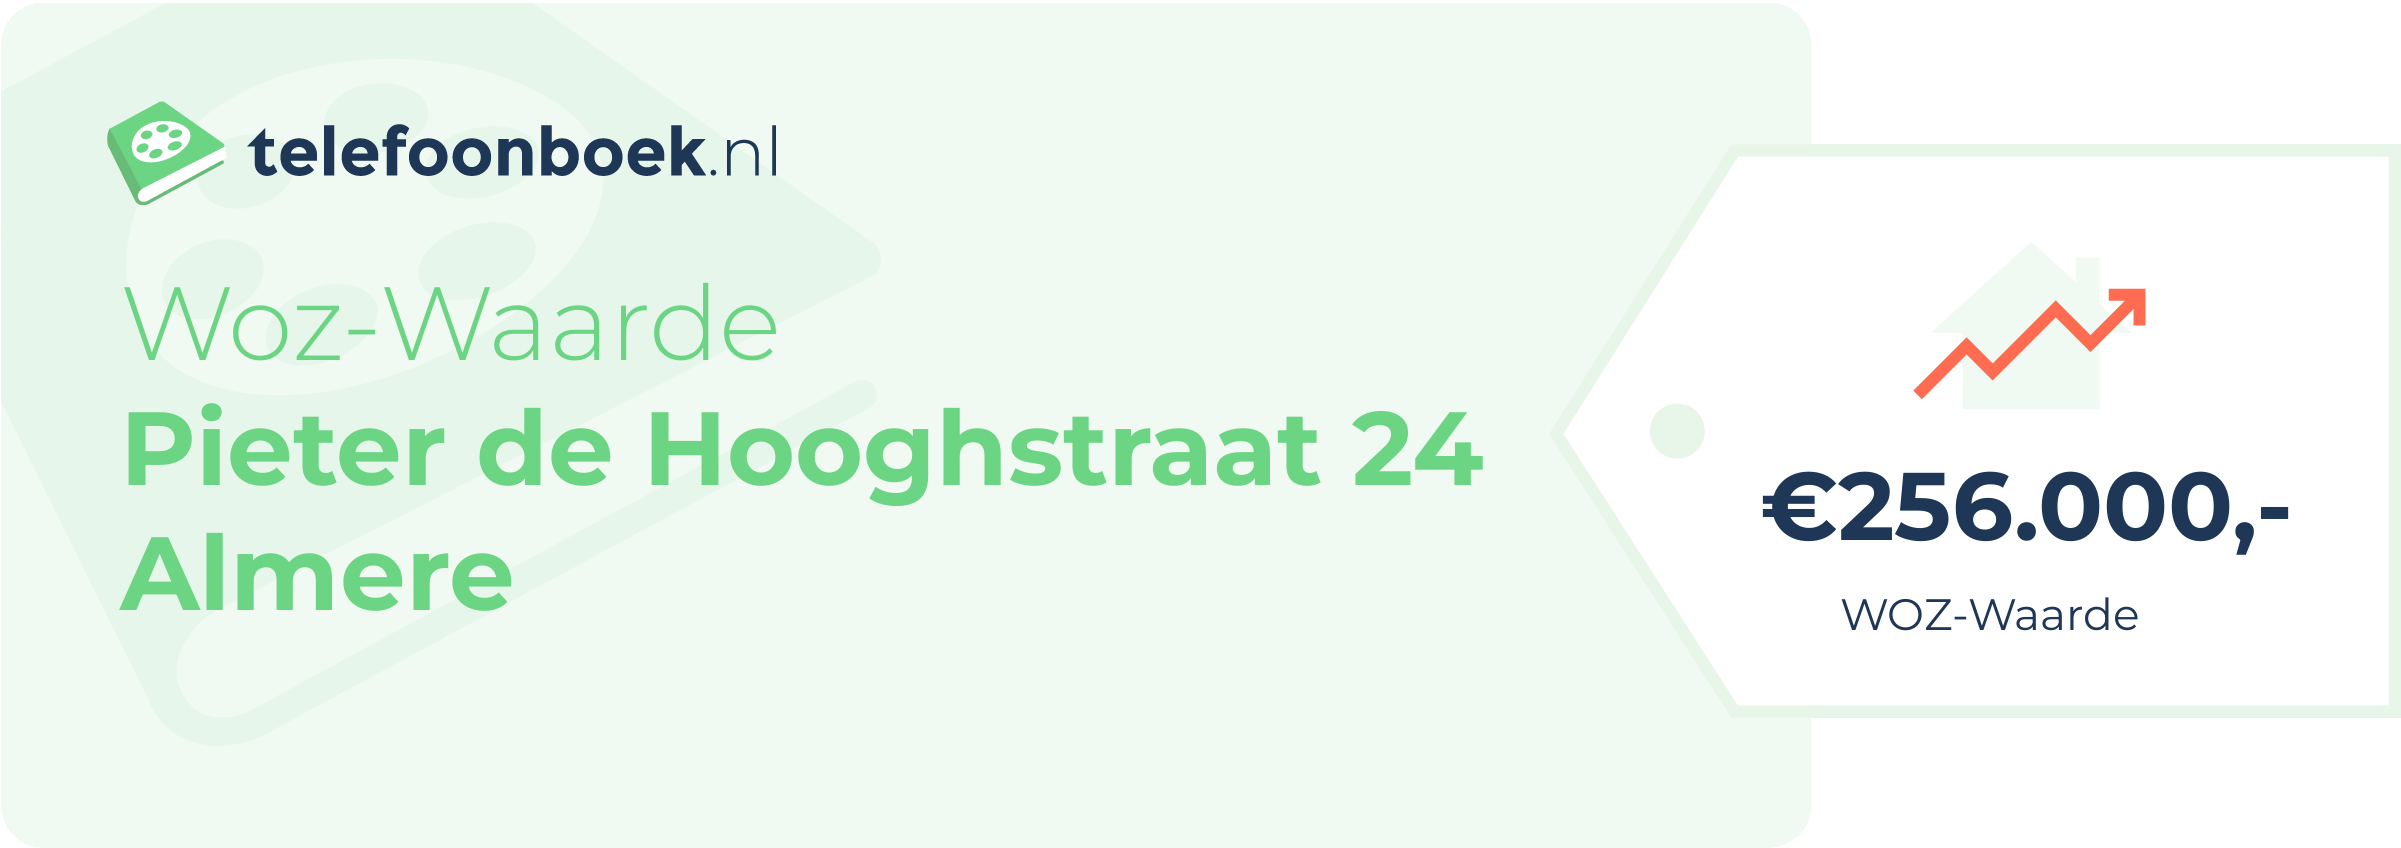 WOZ-waarde Pieter De Hooghstraat 24 Almere